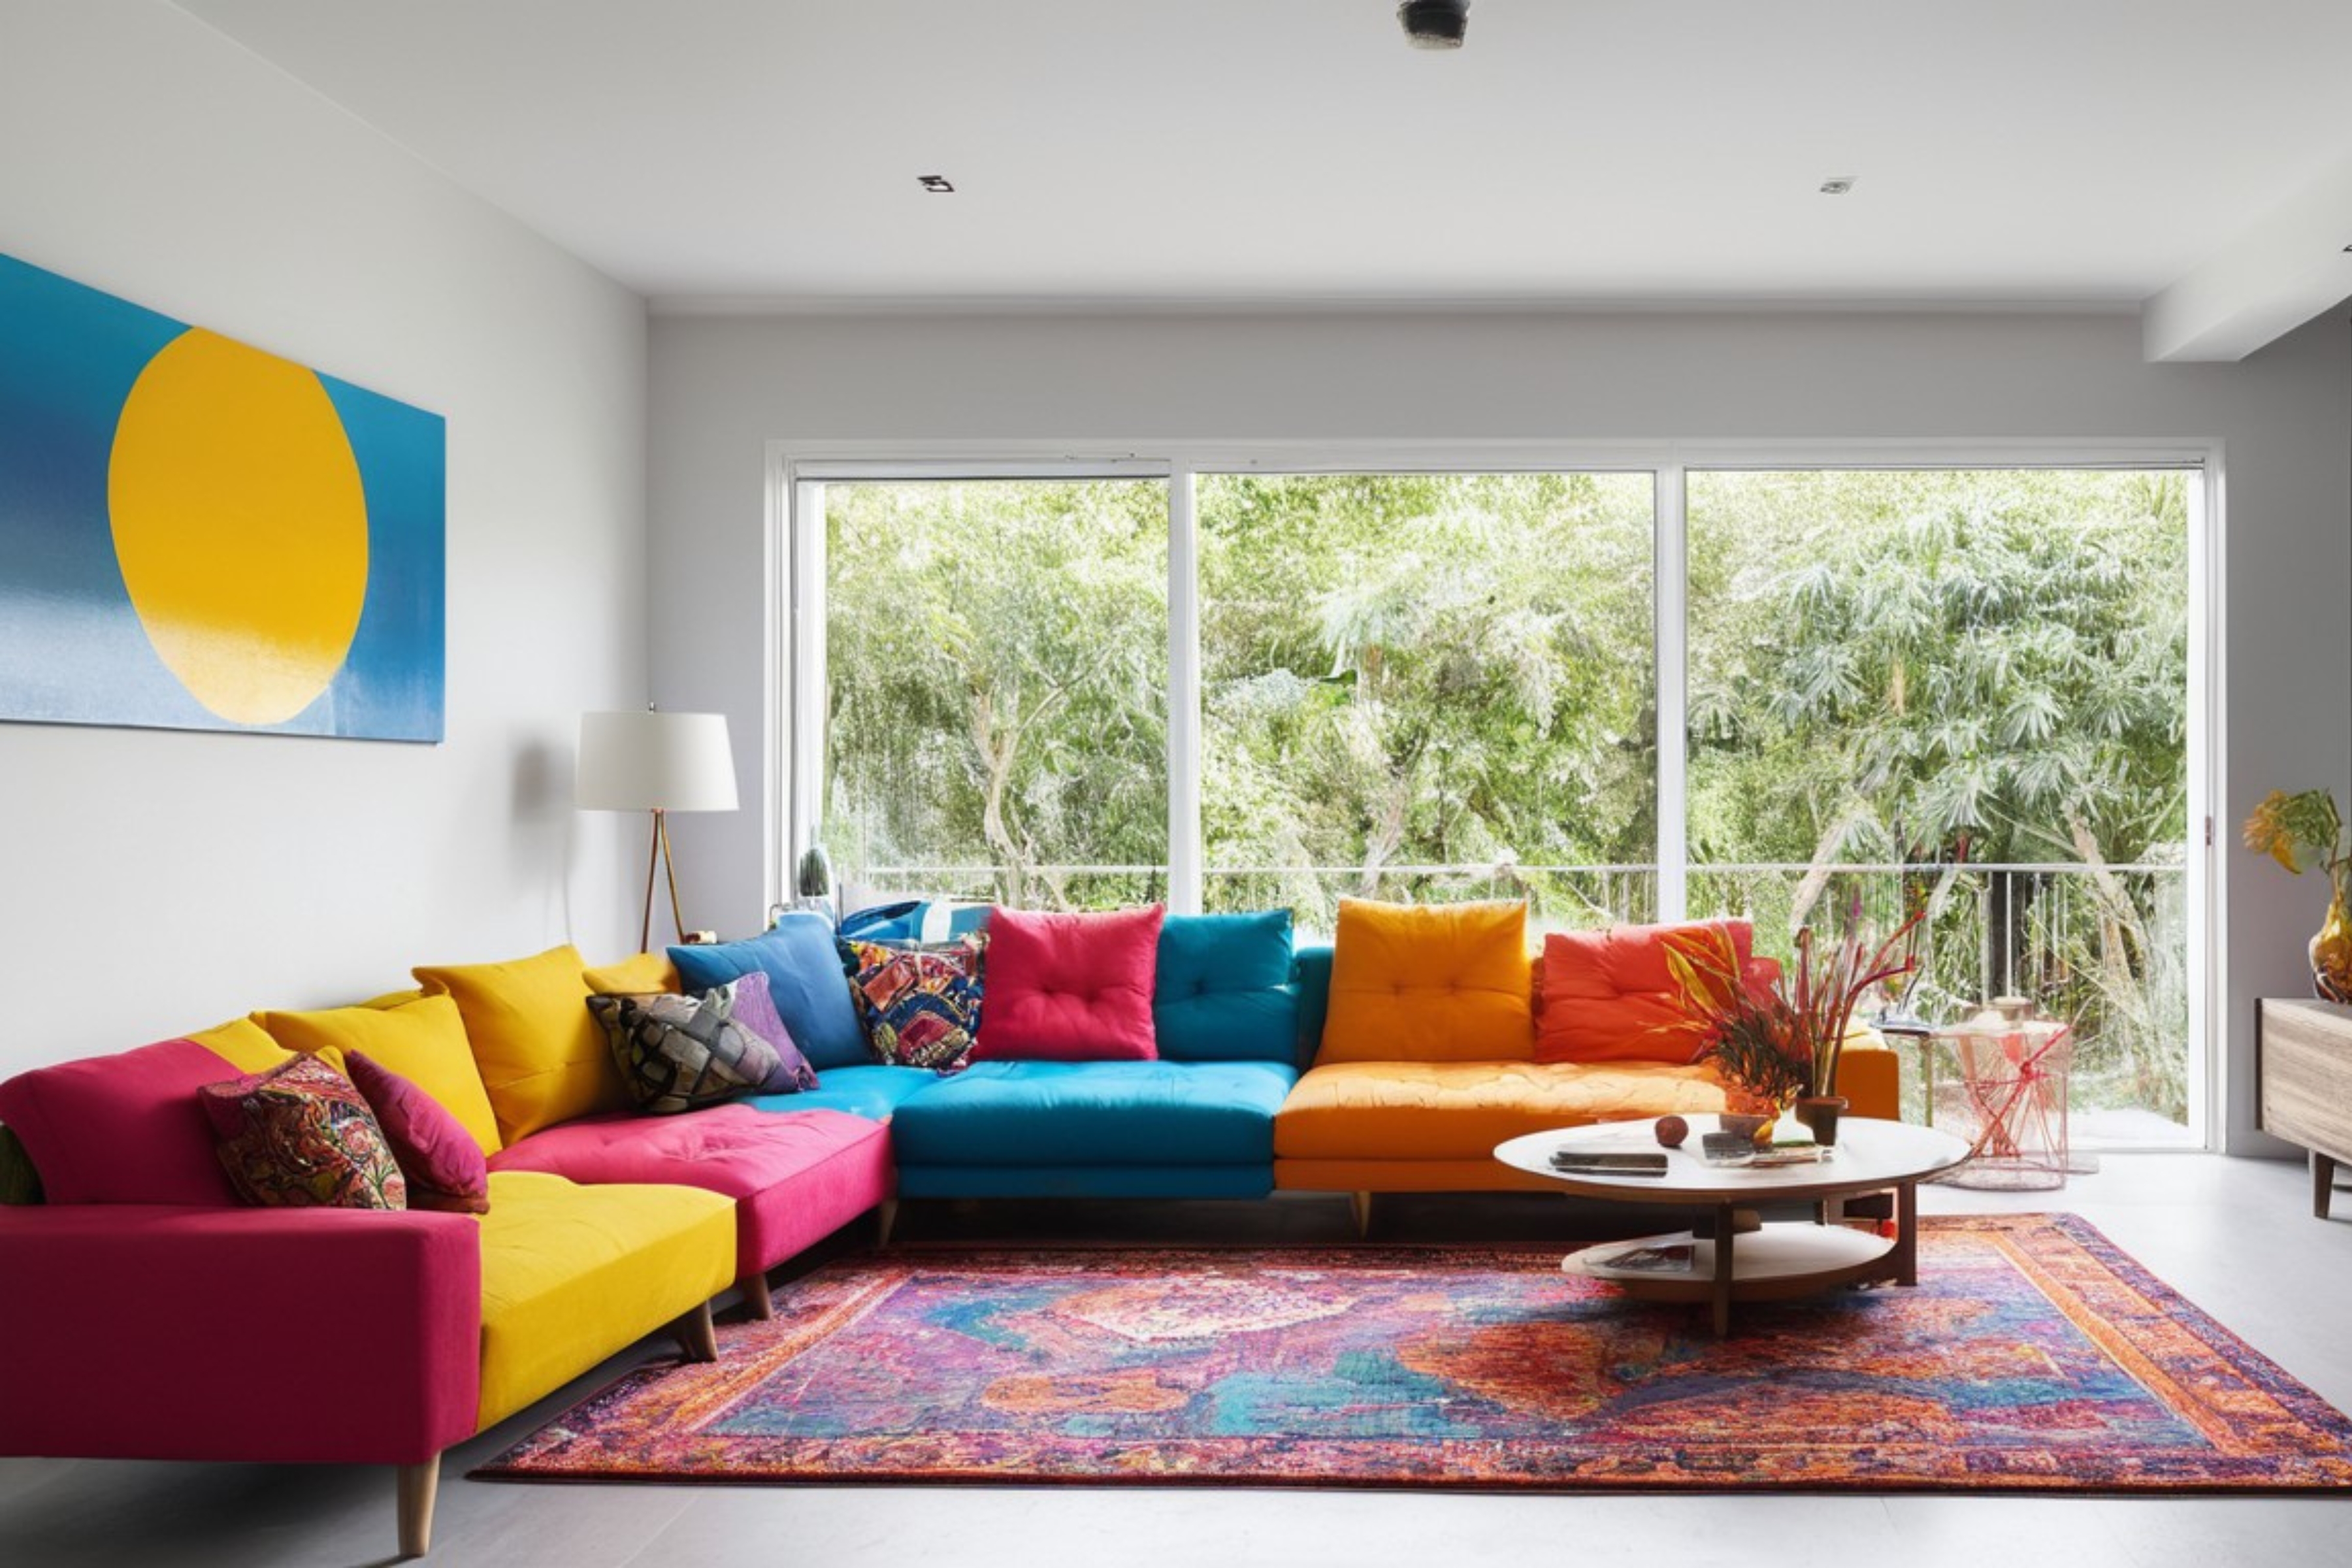 Merész színekkel díszített modern otthon, amely a kulturális színszimbolika sokszínűségét tükrözi.